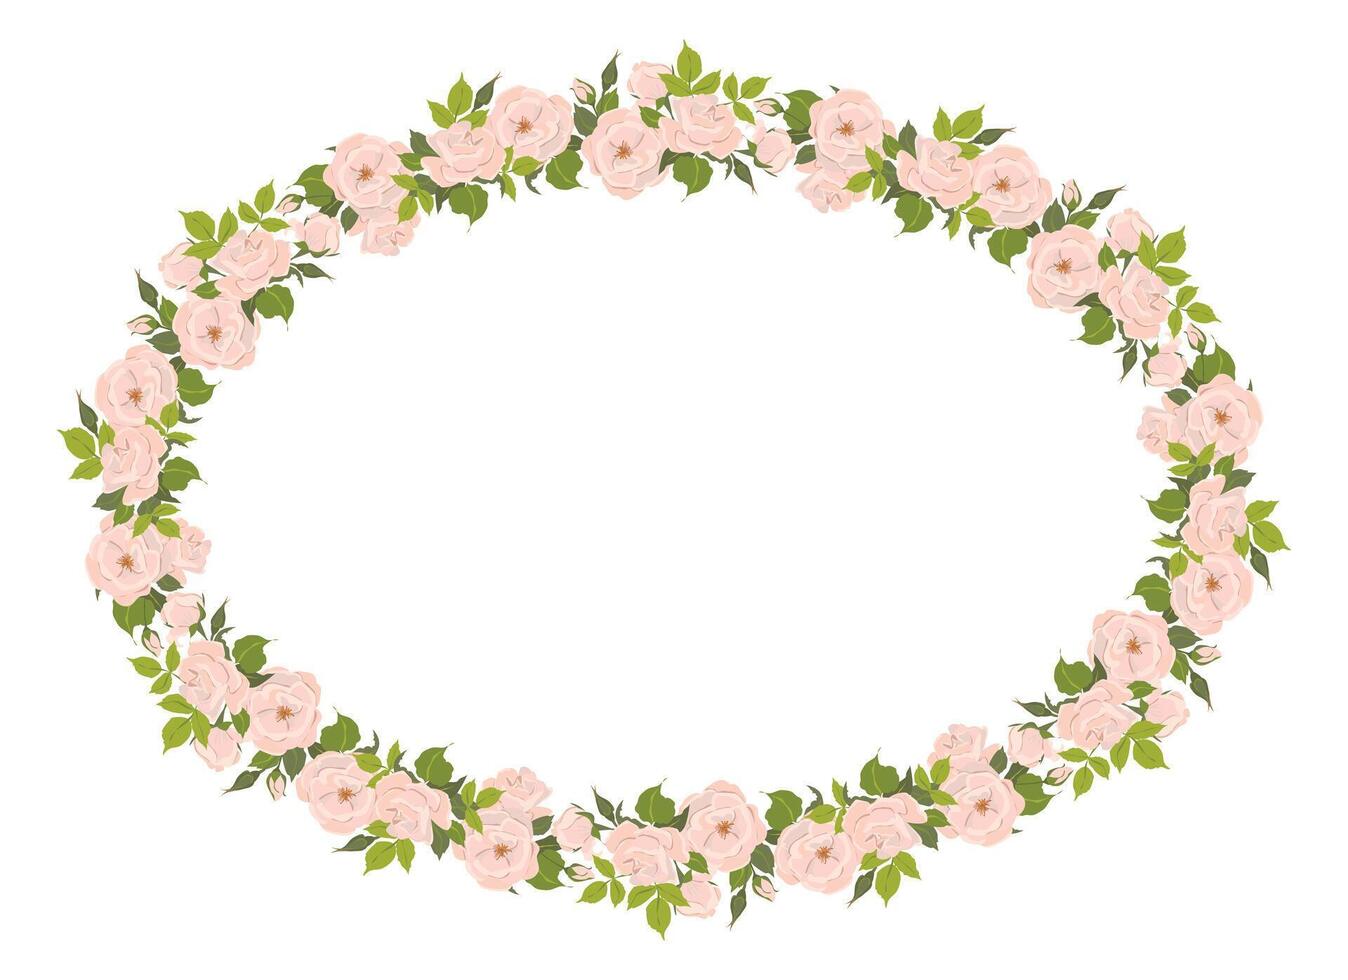 romantisk blommig oval ram, elegant pastell rosa blommor, knoppar och grön löv. en krans av sommar blommor för en bröllop inbjudan i provence stil. platt illustration. vektor